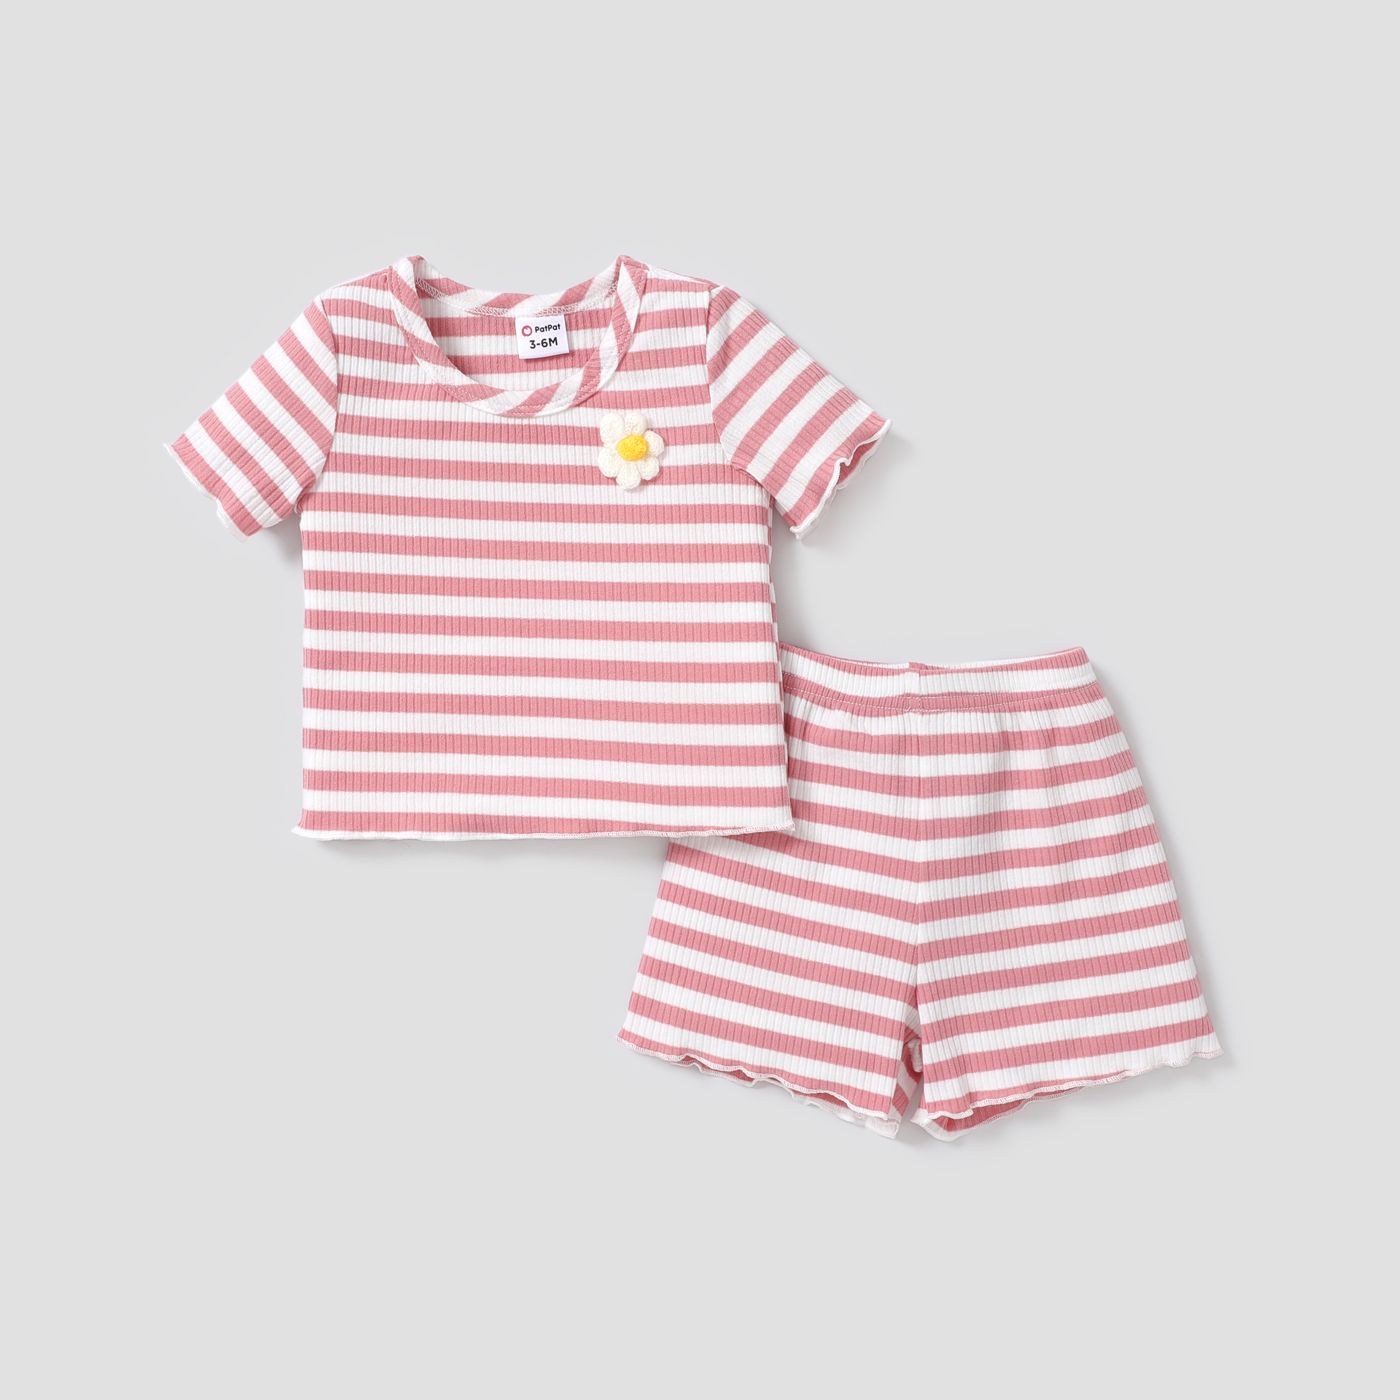 2 件女嬰 3d 花卉設計條紋羅紋短袖上衣和短褲套裝